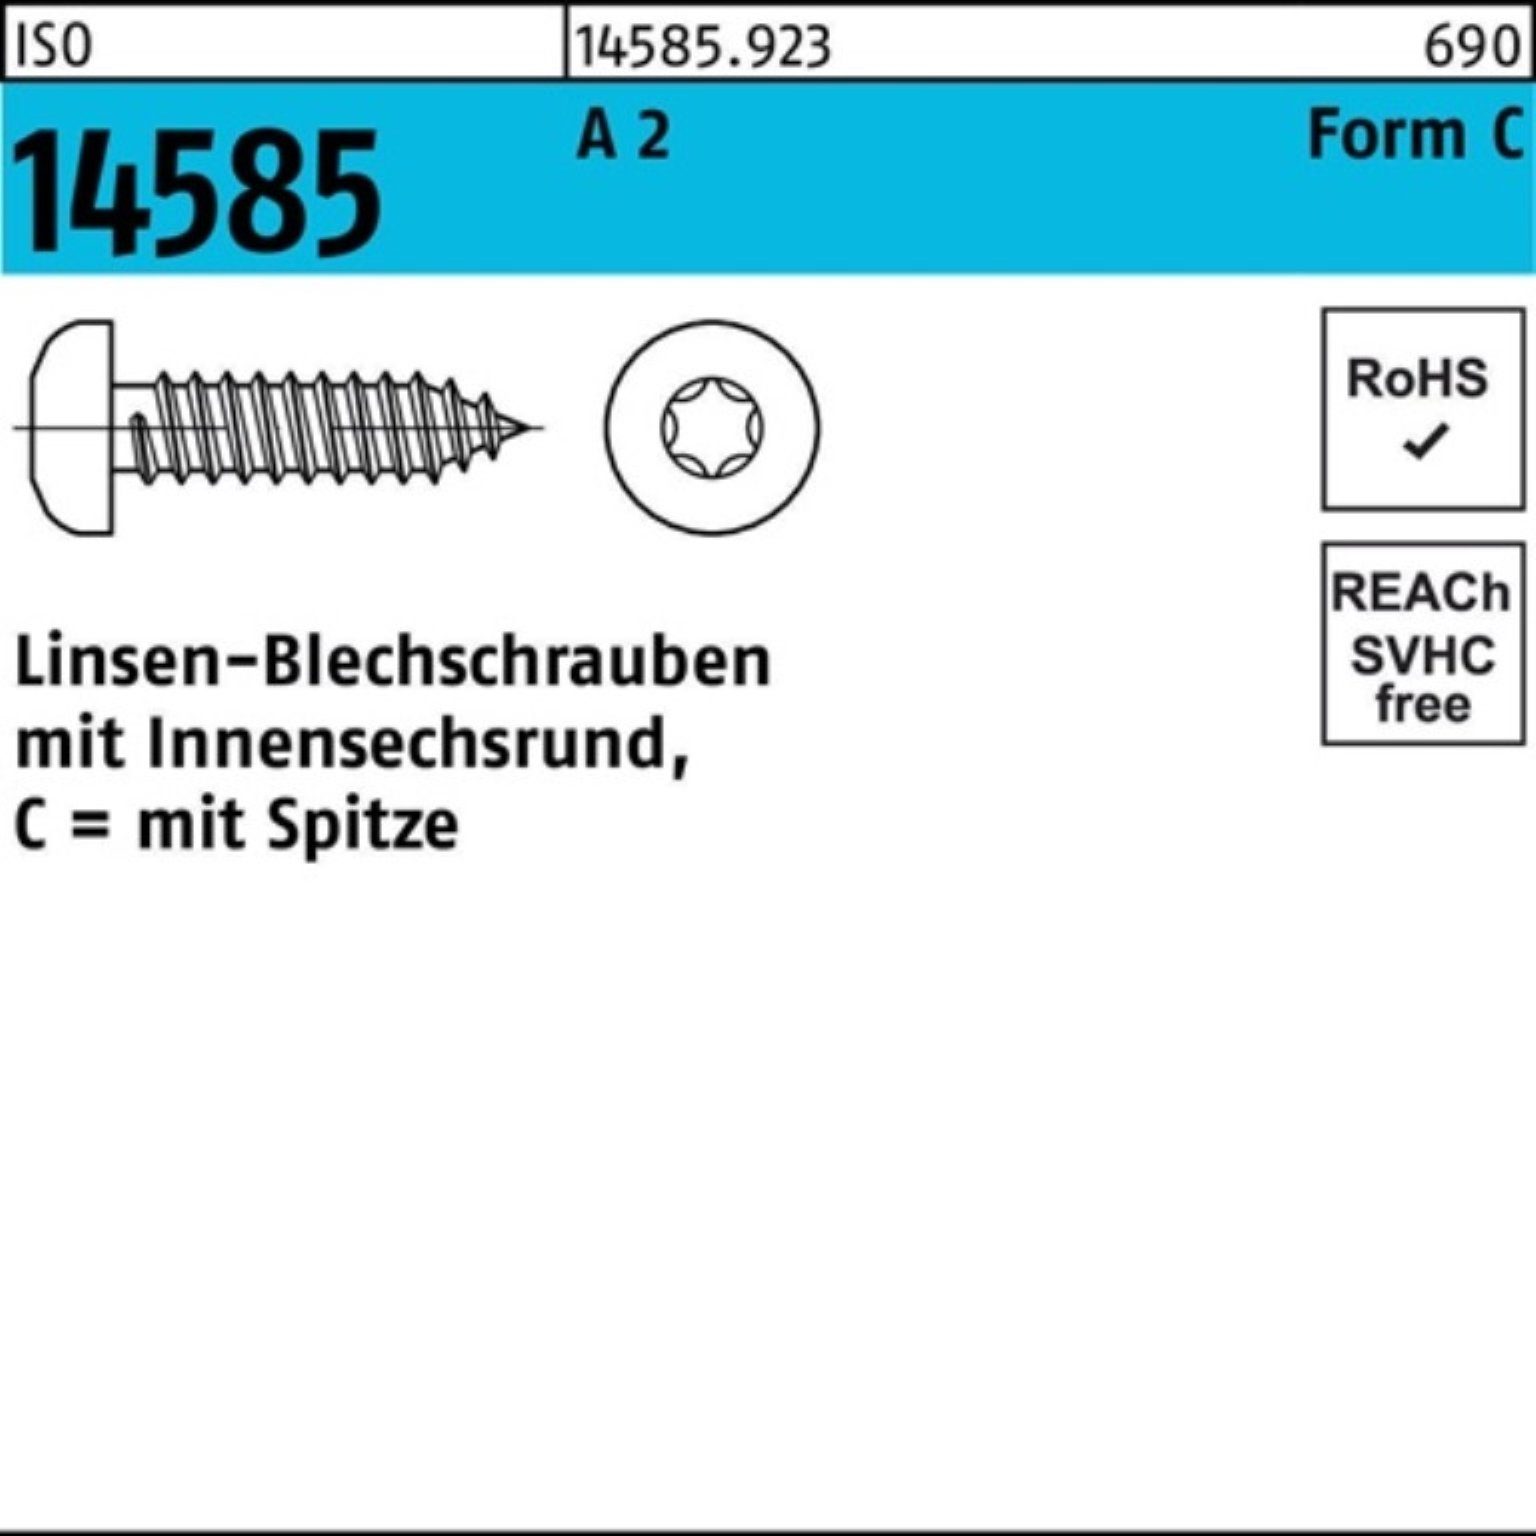 Reyher Blechschraube 250er T25 250 14585 -C Pack ISO A 2 45 St ISR Linsenblechschraube 4,8x